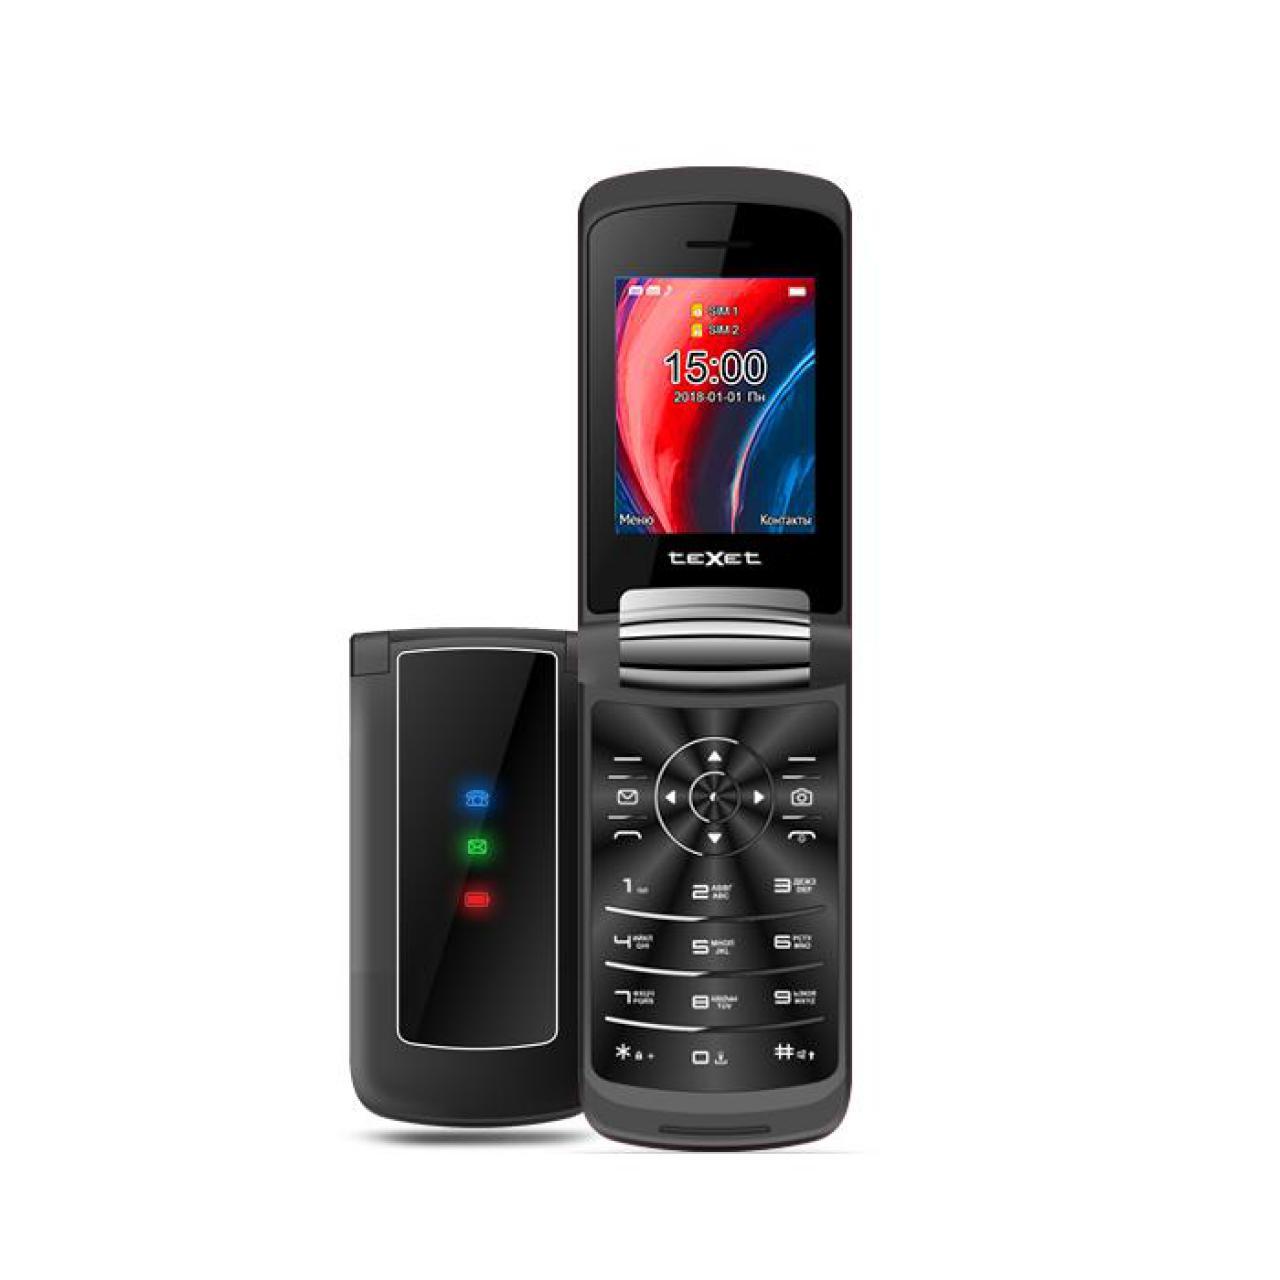 Мобильный телефон Texet TM-317 черный